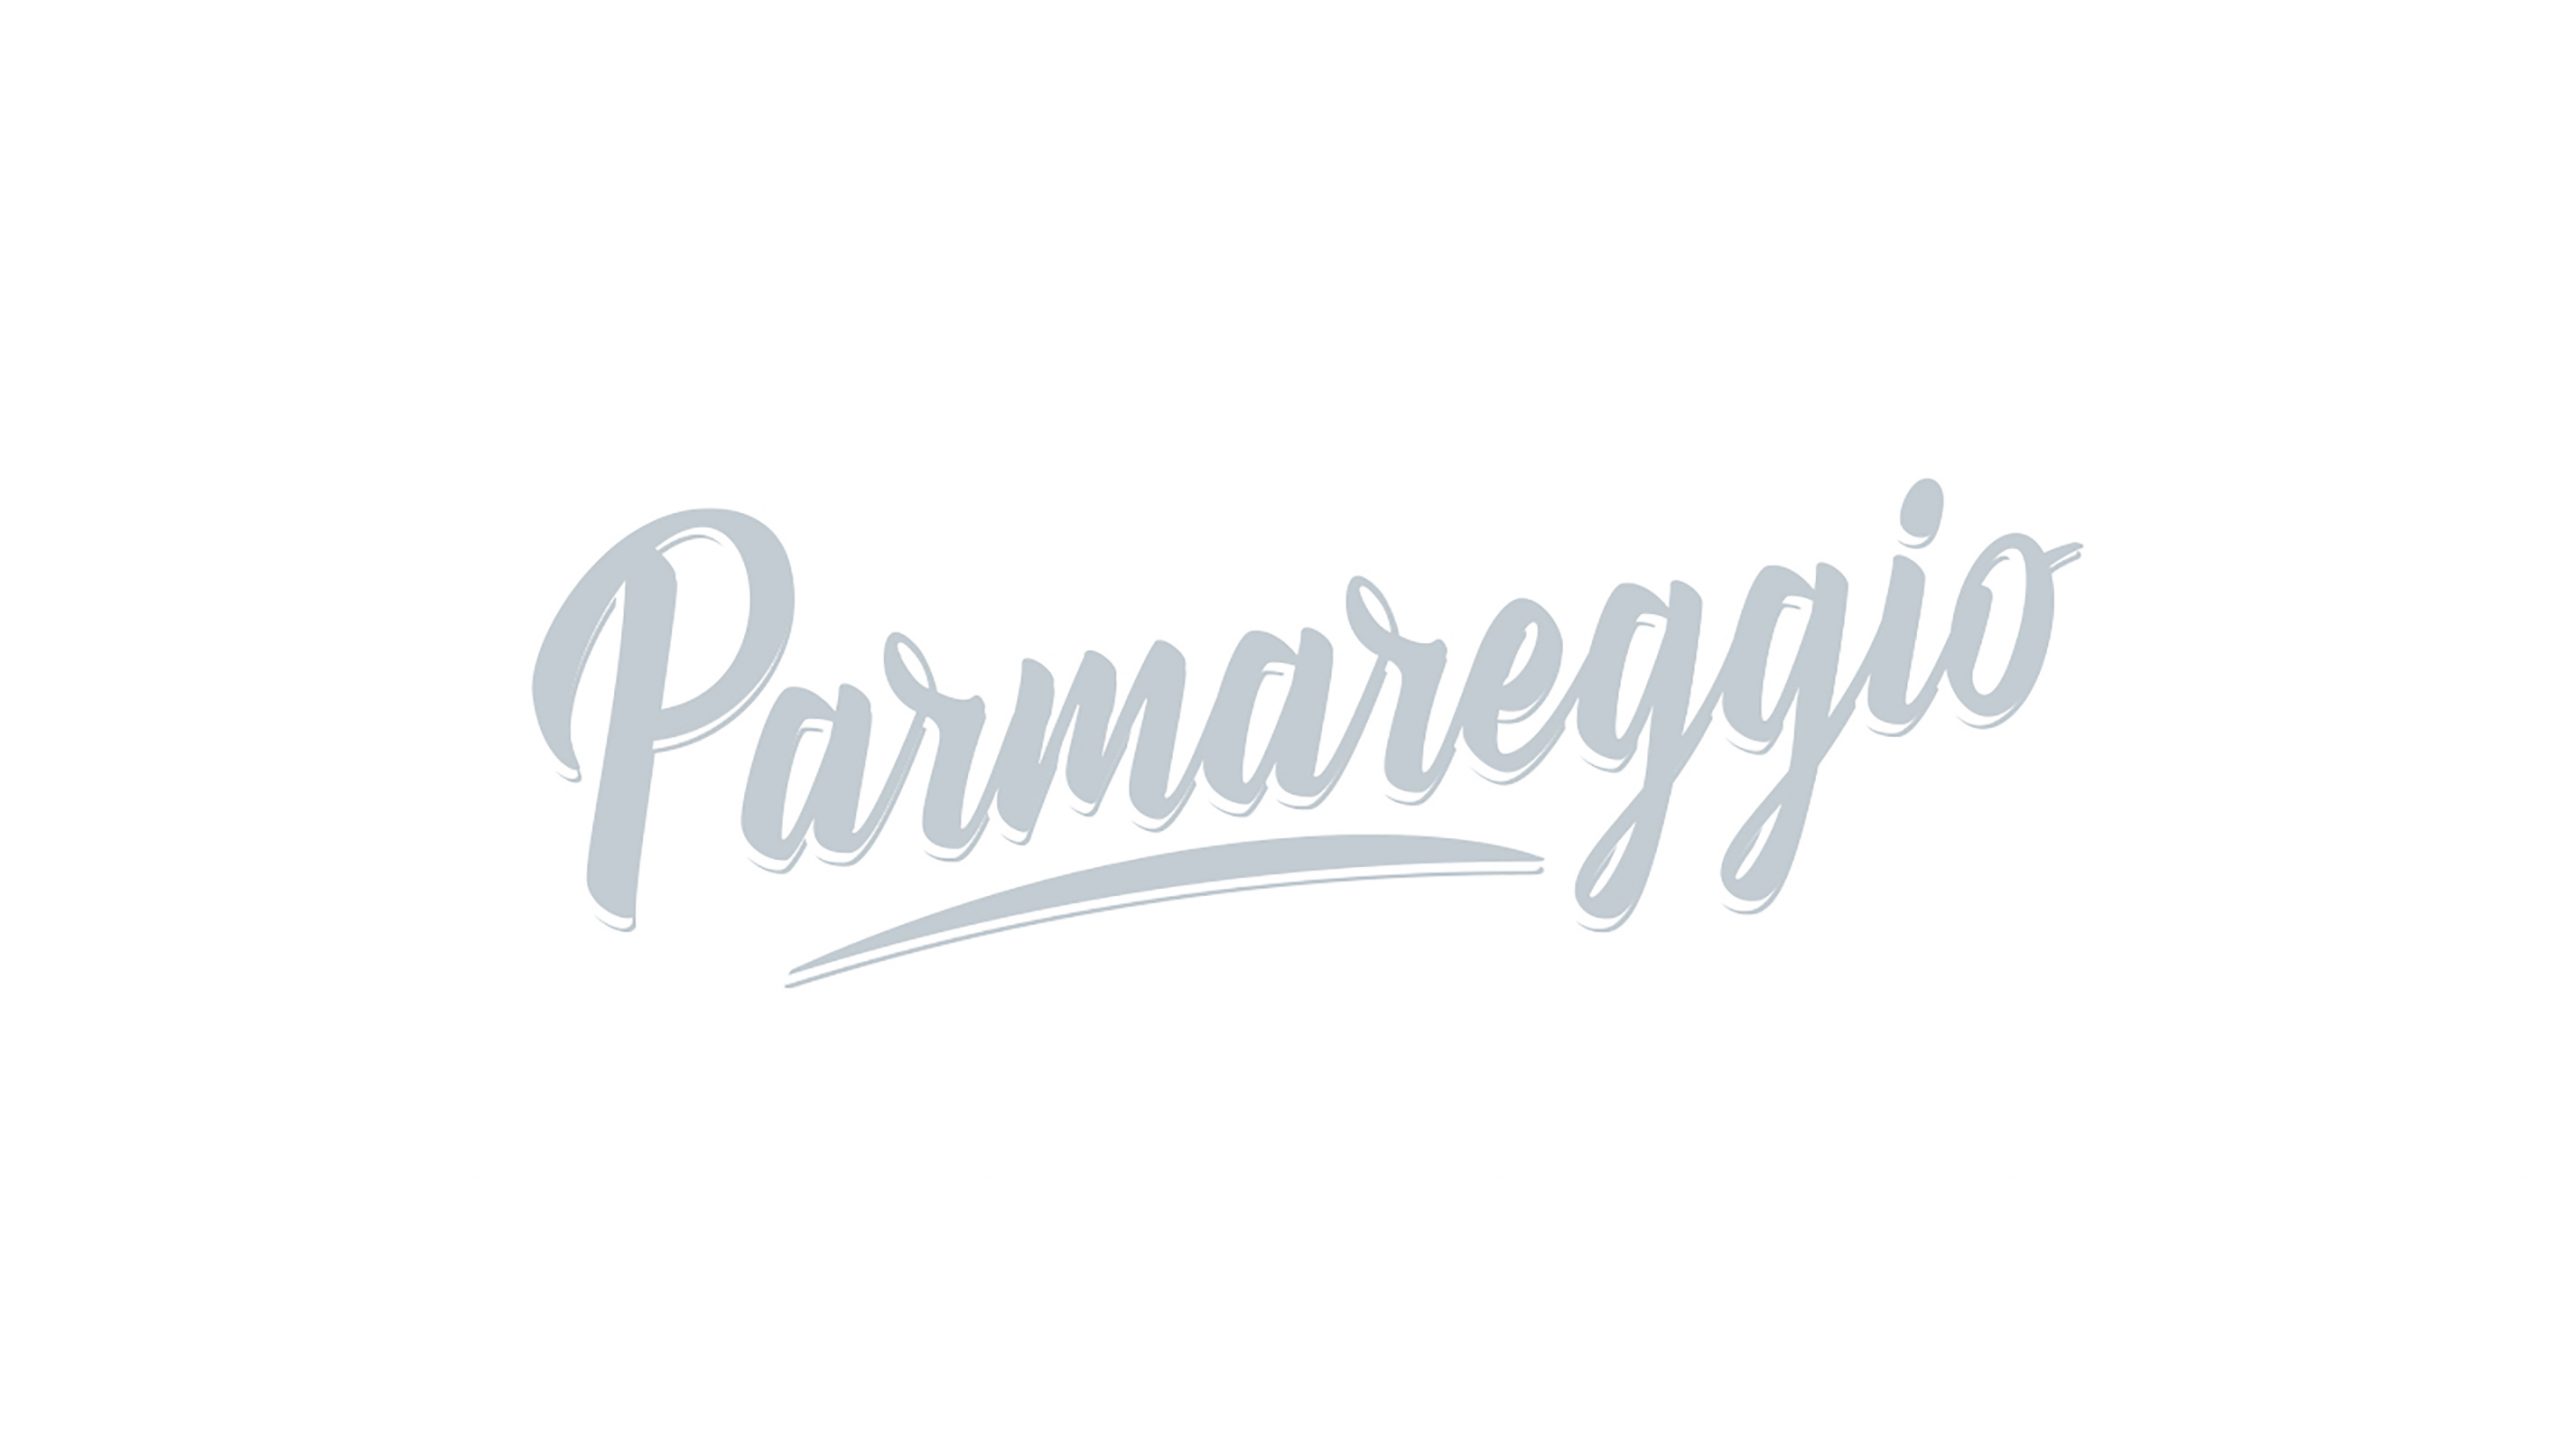 Parmareggio